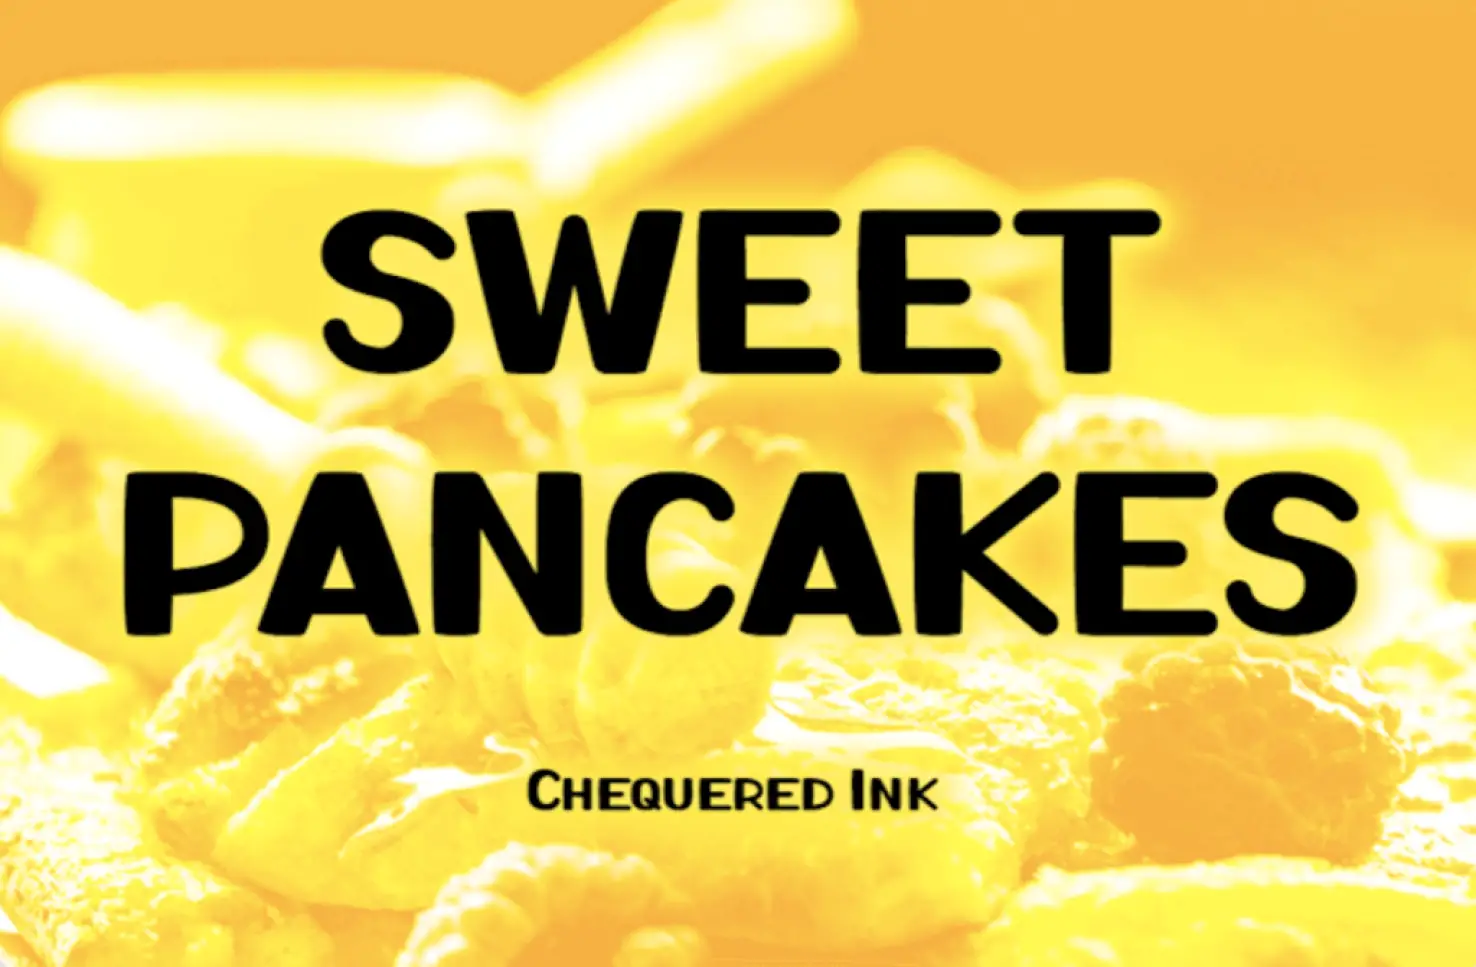 Sweet Pancakes - Best April fonts 2022